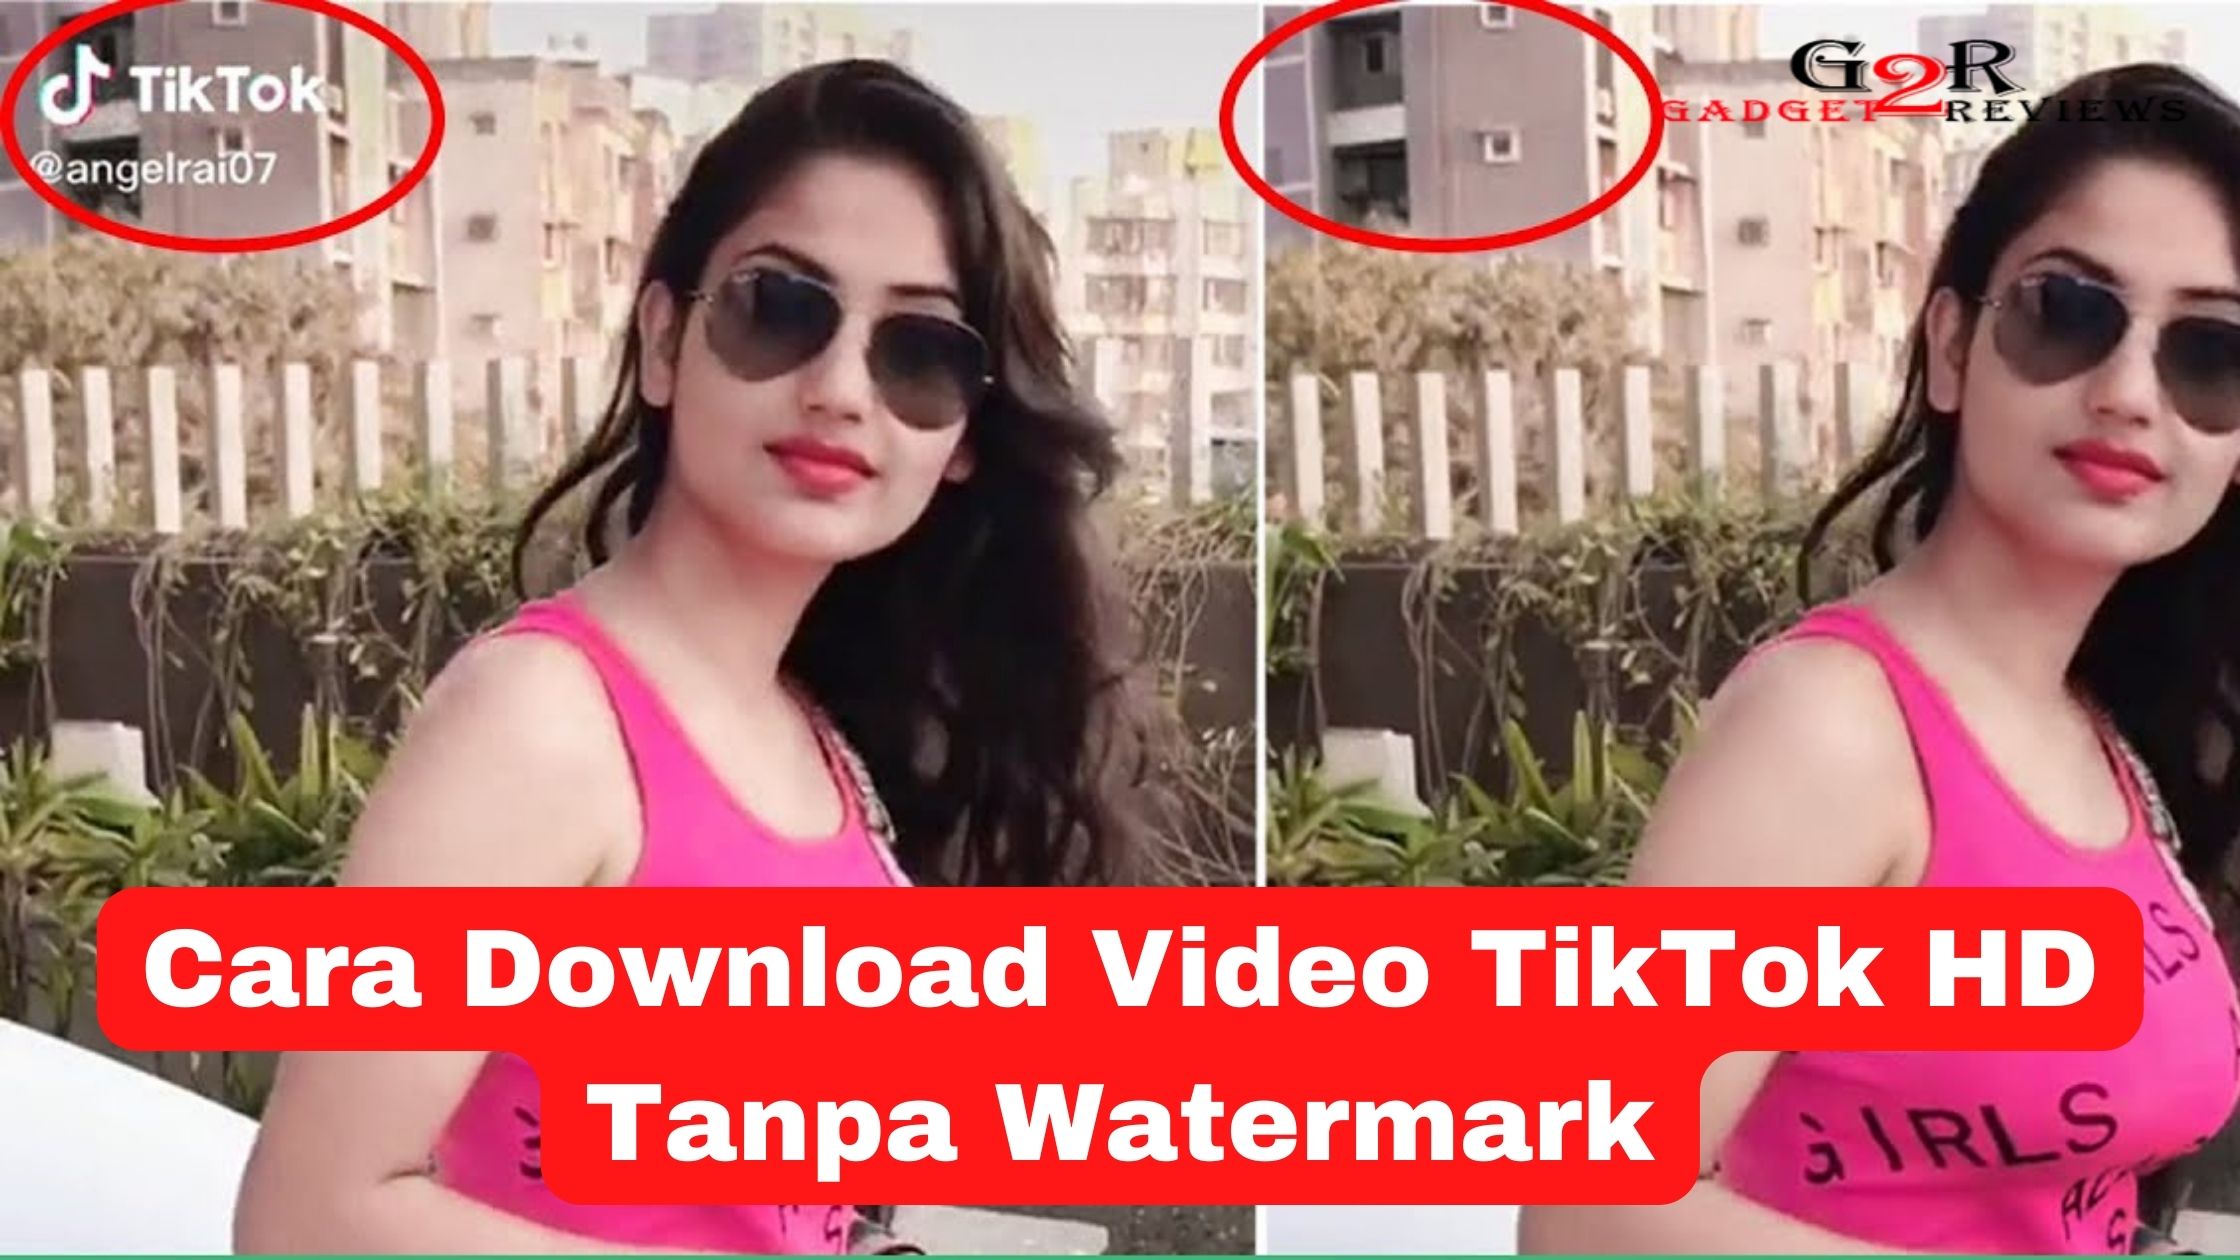 Cara Download Video TikTok HD Tanpa Watermark